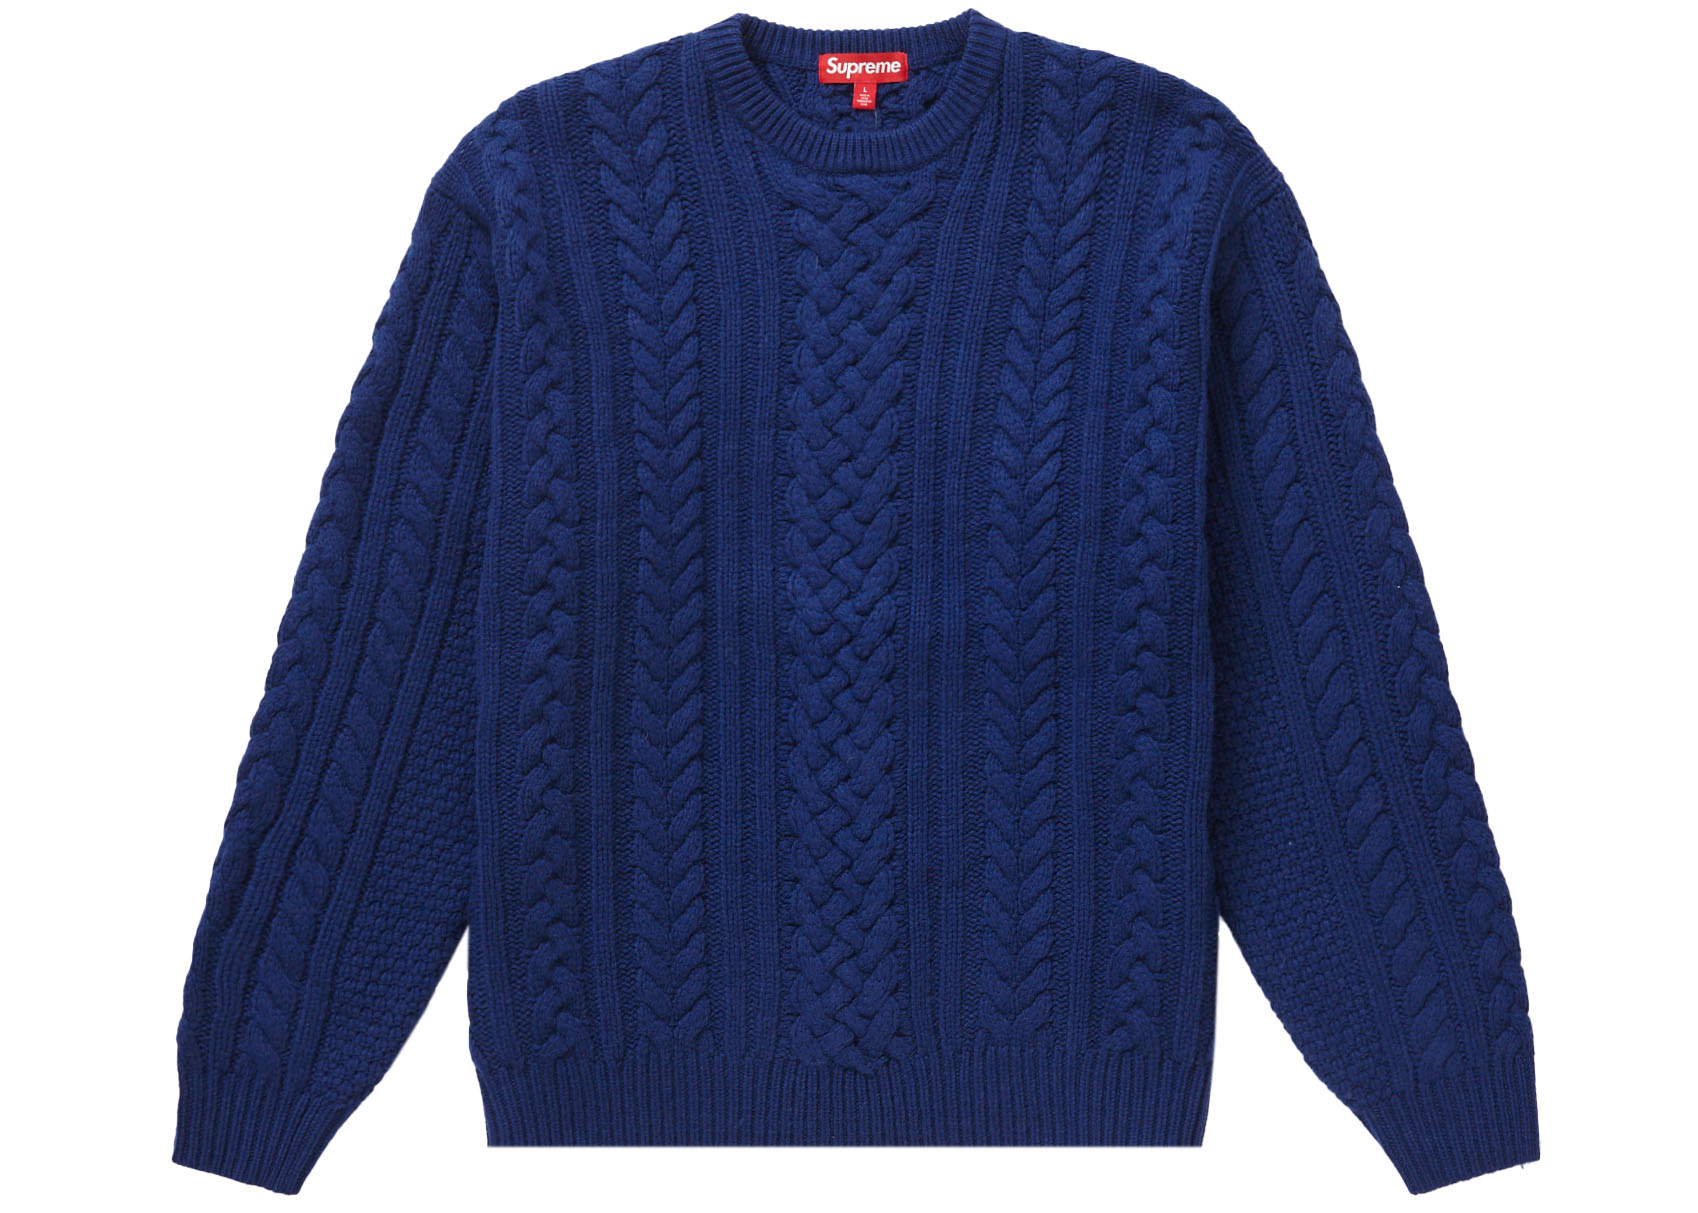 かしこまりました【M】Supreme Applique Cable Knit Sweater